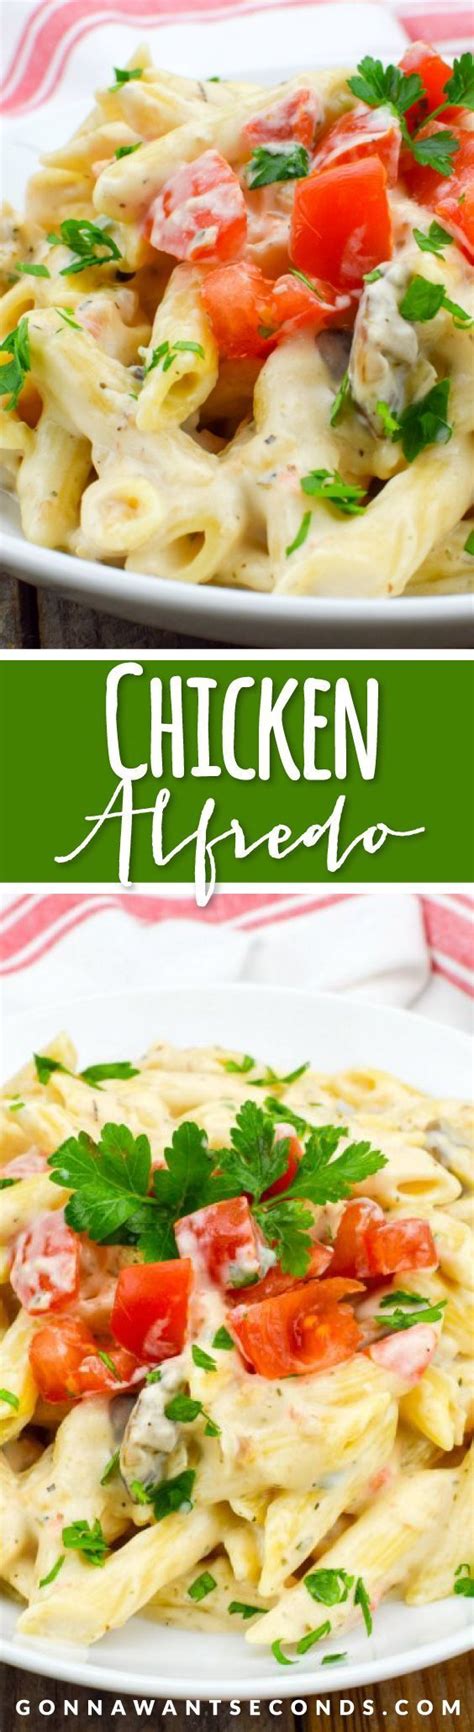 Chicken Alfredo With Video Recipe Best Pasta